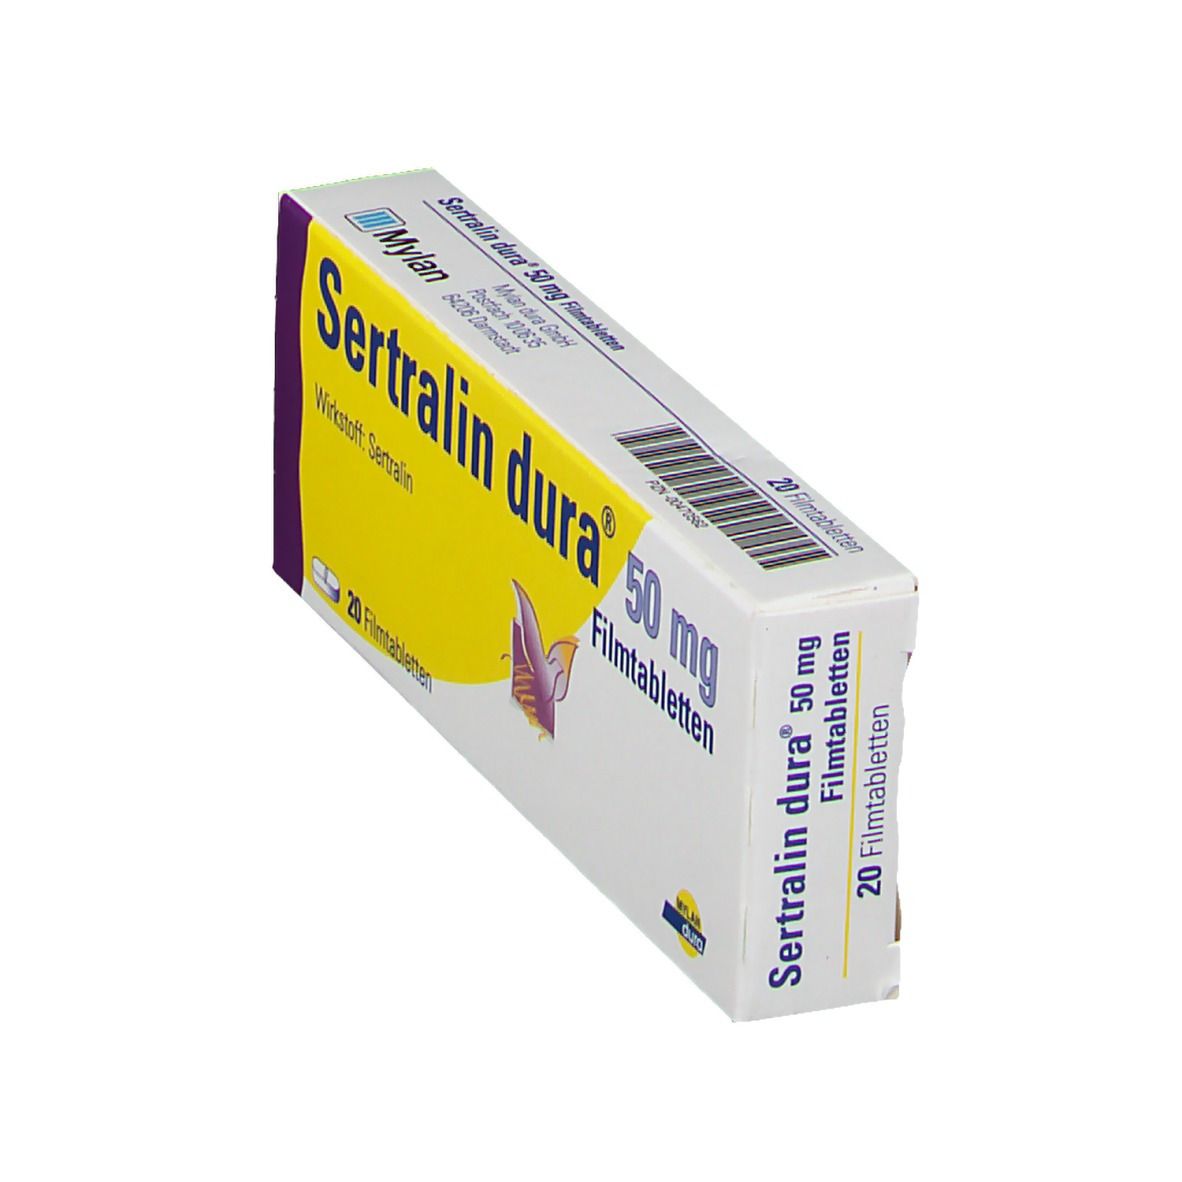 Sertralin dura® 50 mg